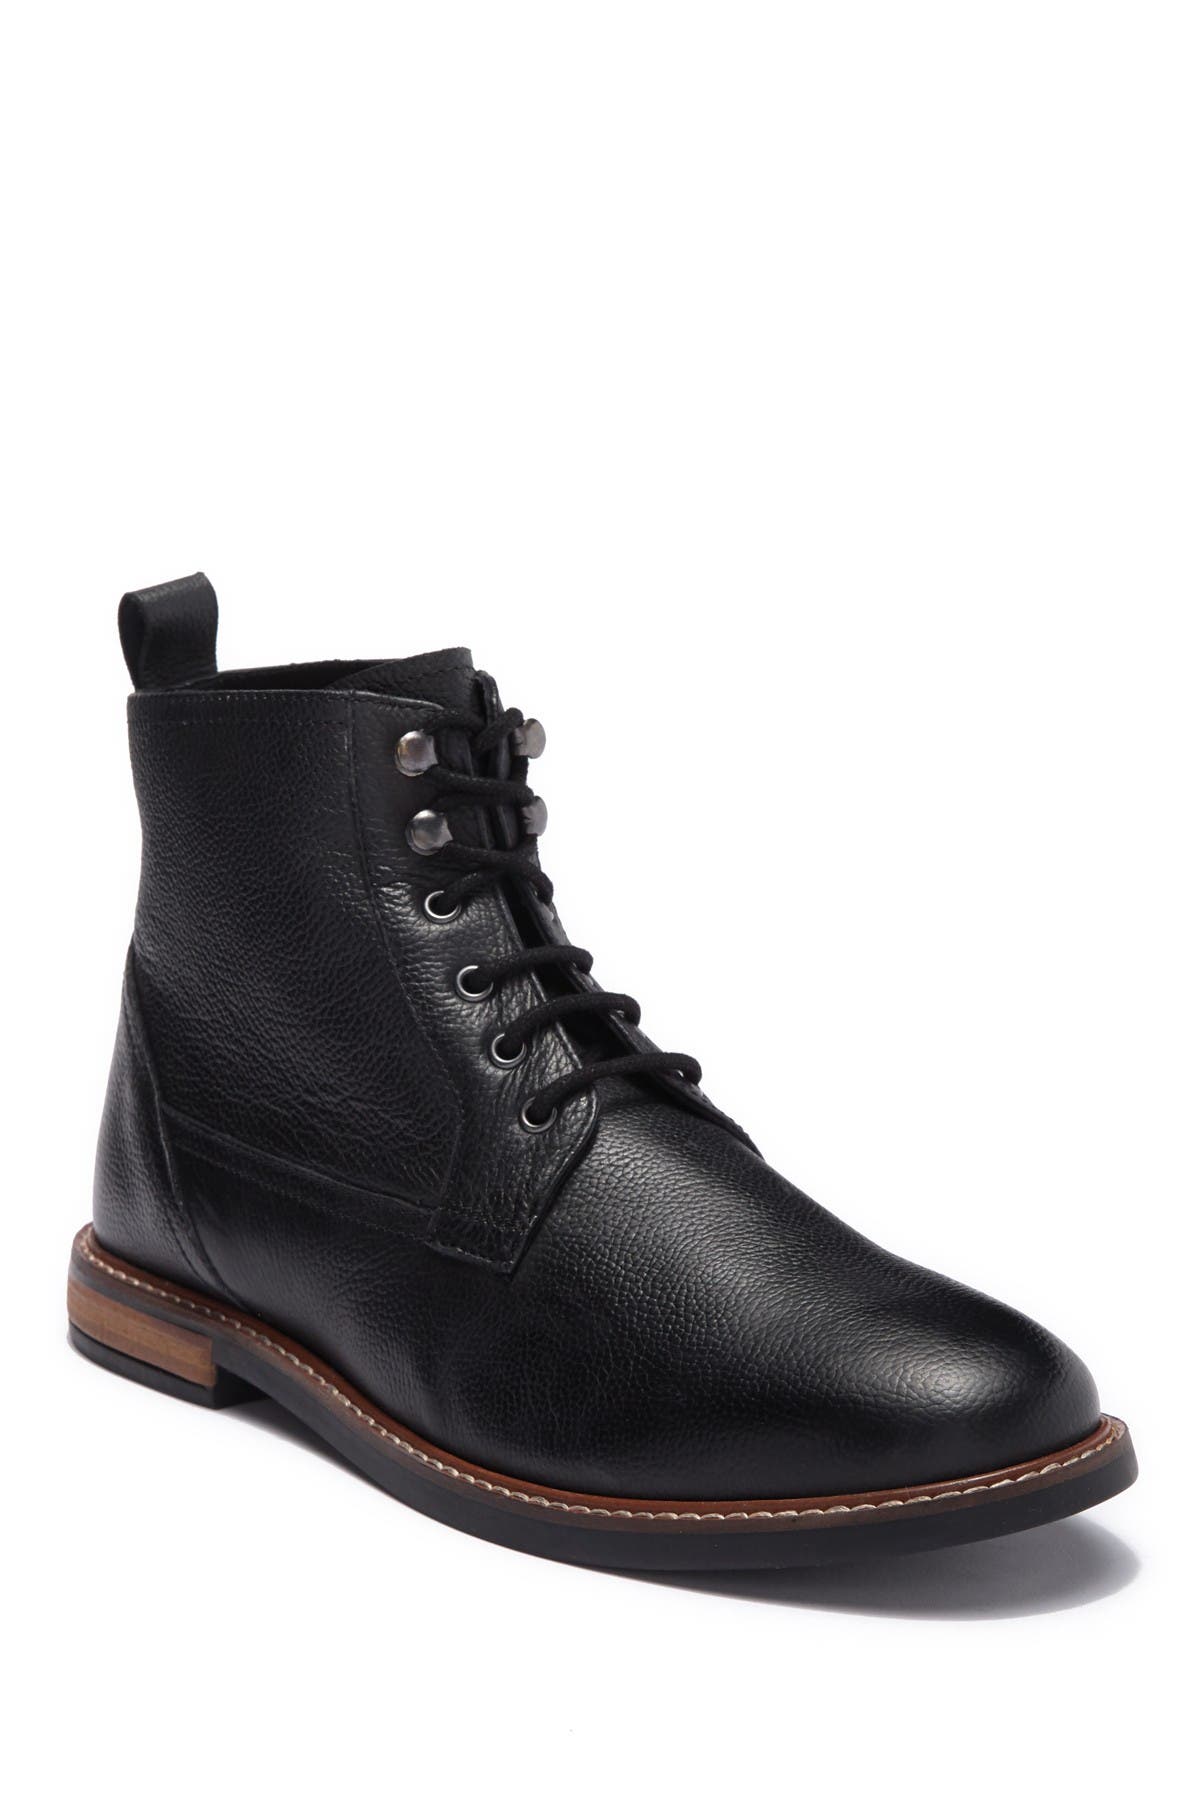 plain black leather boots